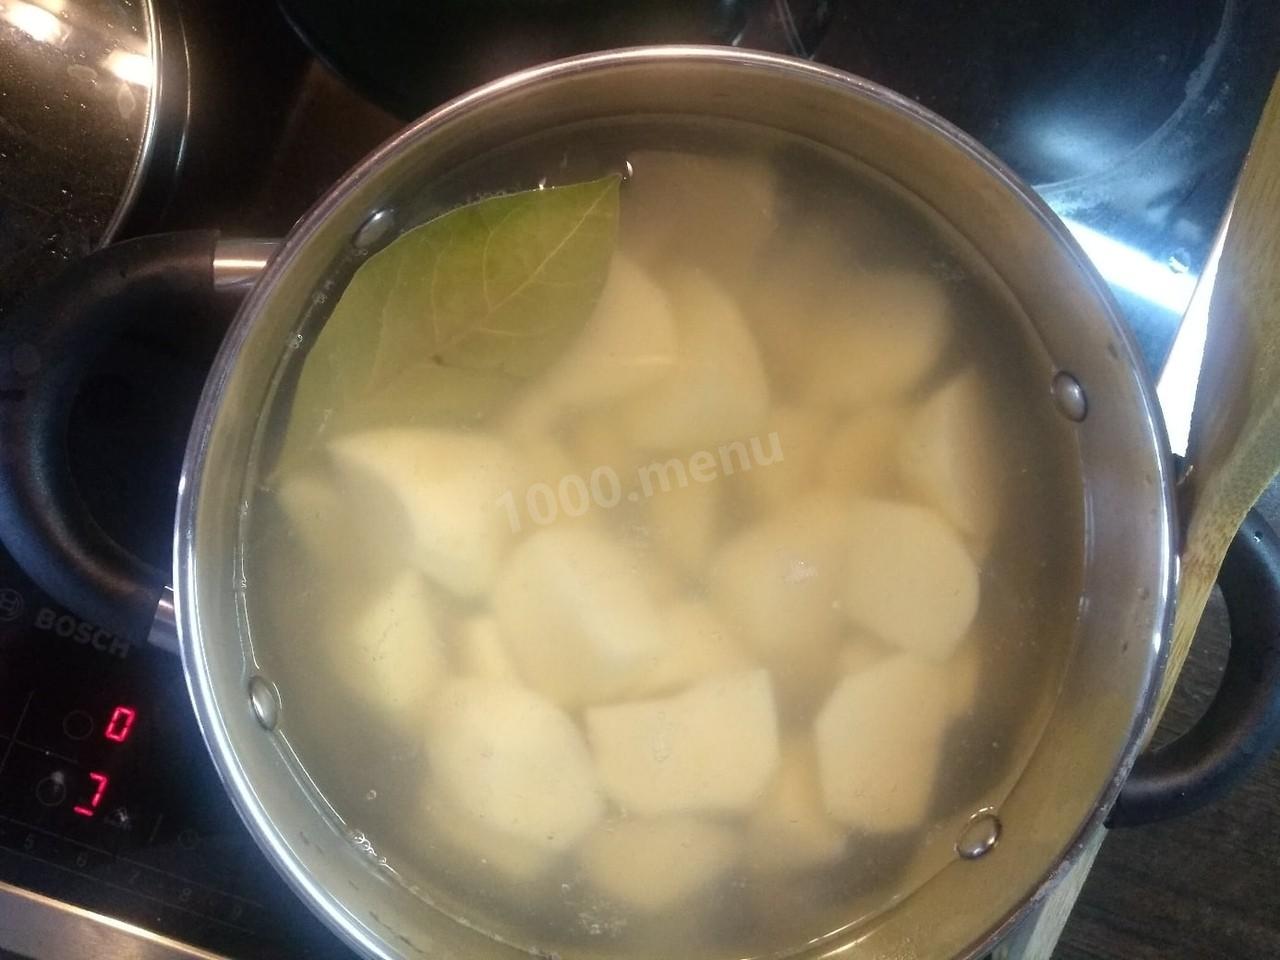 Картошку кидают в кипящую воду. Лаврушку запекают в картошке. Как закипает вода с картошкой. Картофель бросить в кипящую воду. Горячая вода с картошкой как парить.